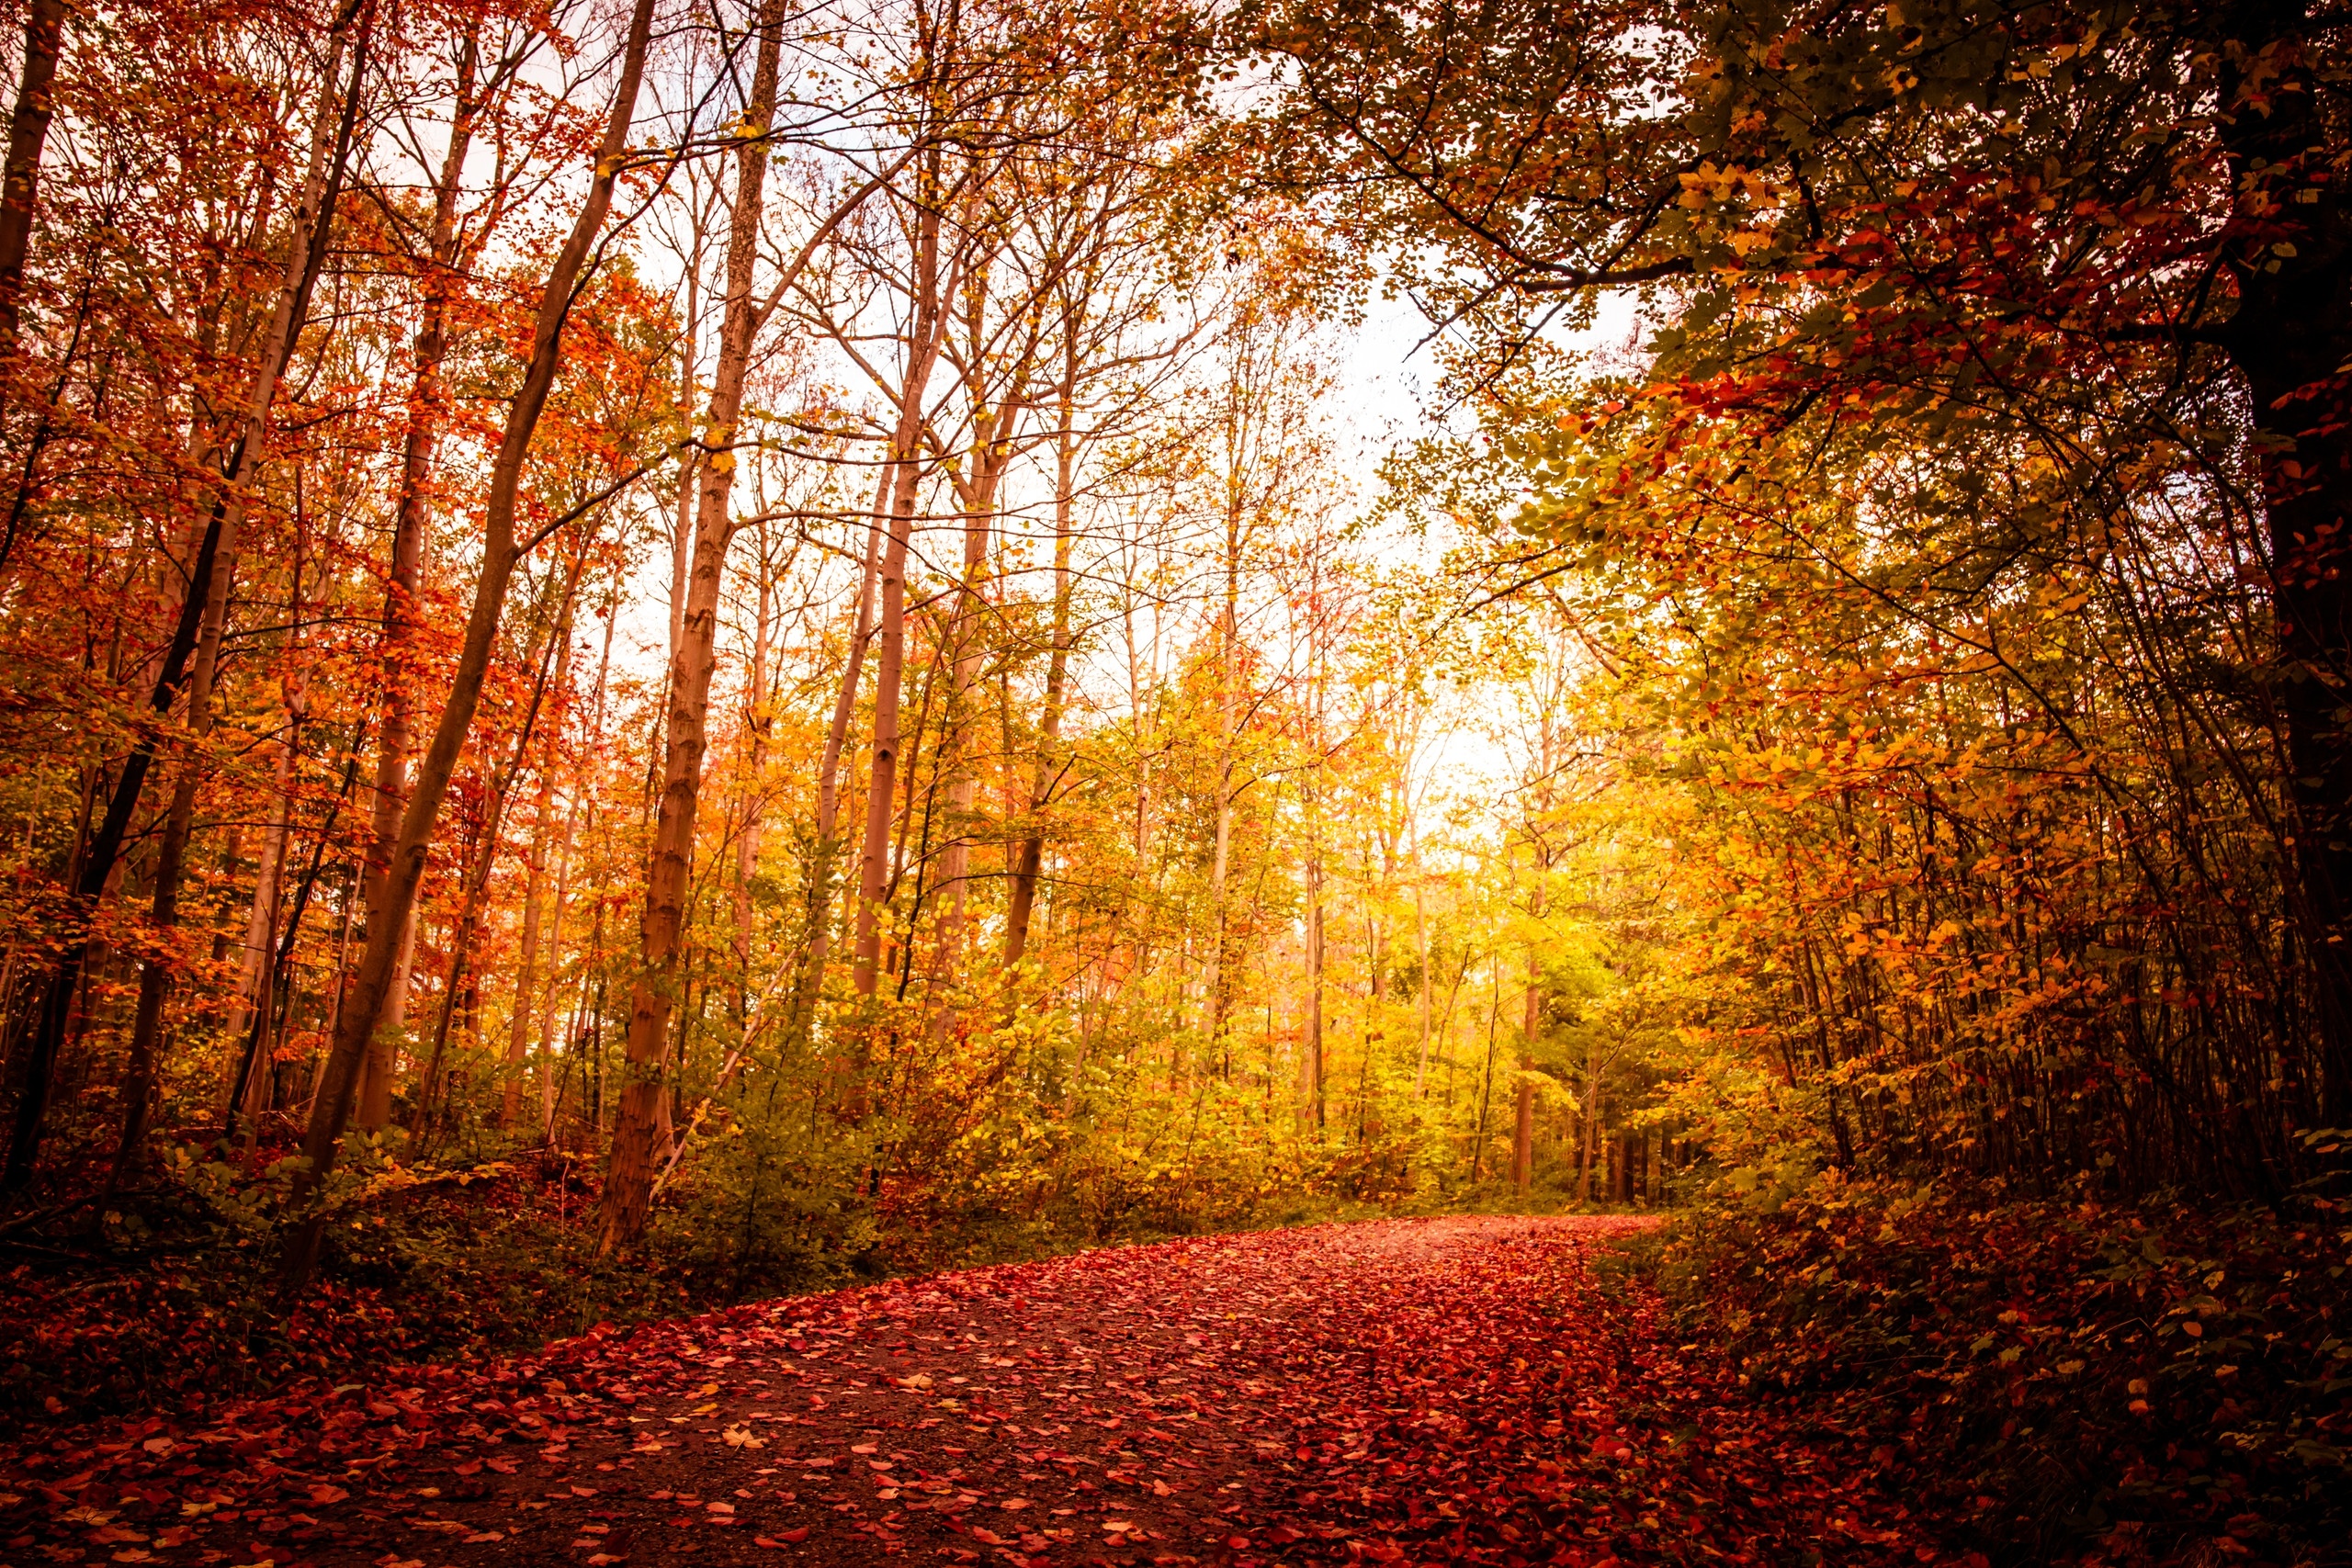 Bäume und Herbstlaub auf Waldweg. Im Herbst färben sich die Blätter bunt und fallen von den Bäumen. Wisst ihr, warum es so viele bunte Blätter im Herbst gibt und warum die Bäume ihre Blätter verlieren? Wir erklären euch, was hinter der Farbenpracht im Herbst steckt.  | Bild: colourbox.com